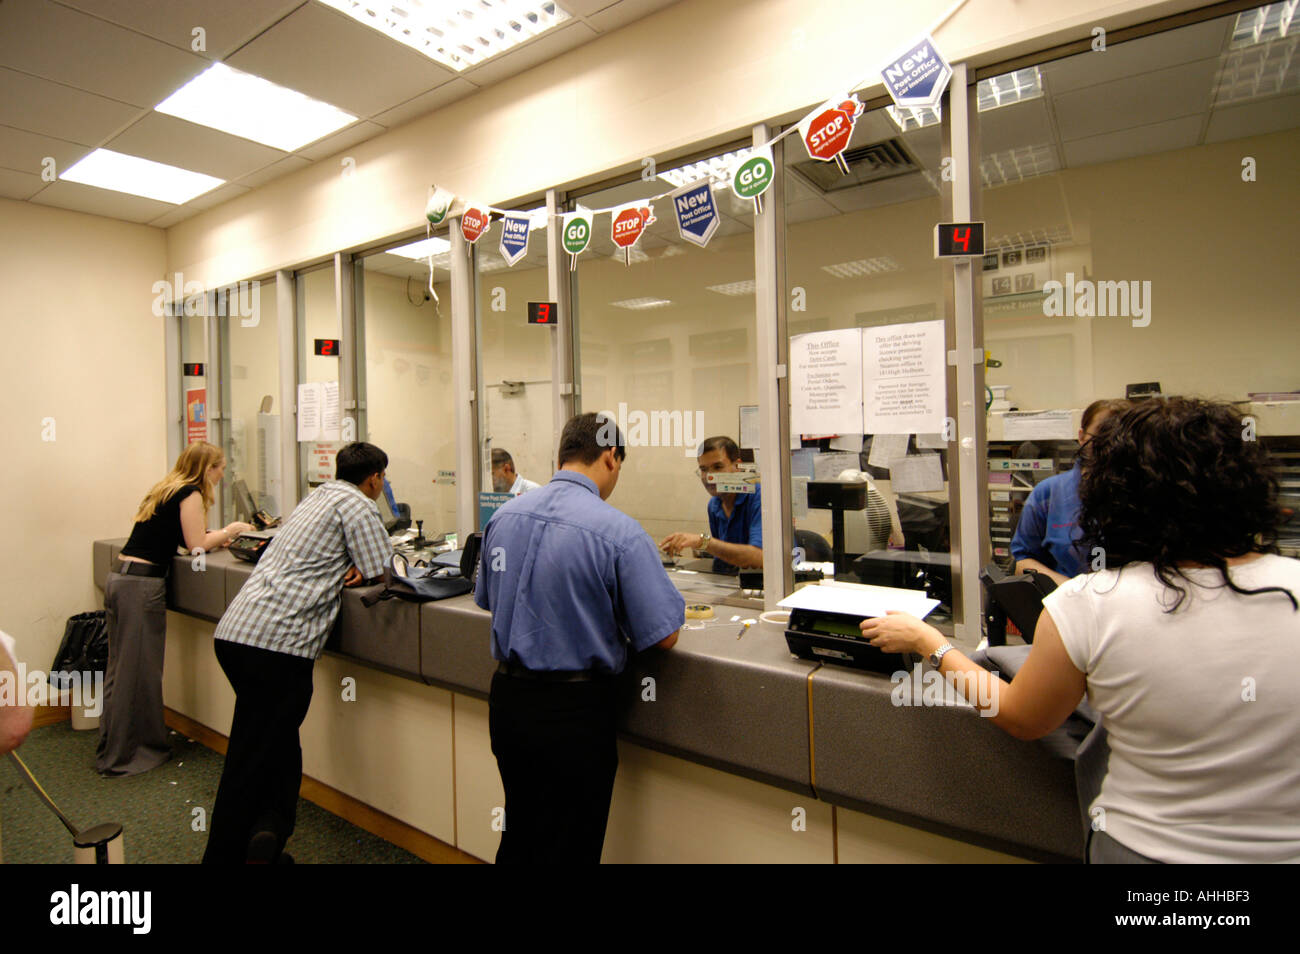 Les clients au guichet de poste, England, UK Banque D'Images